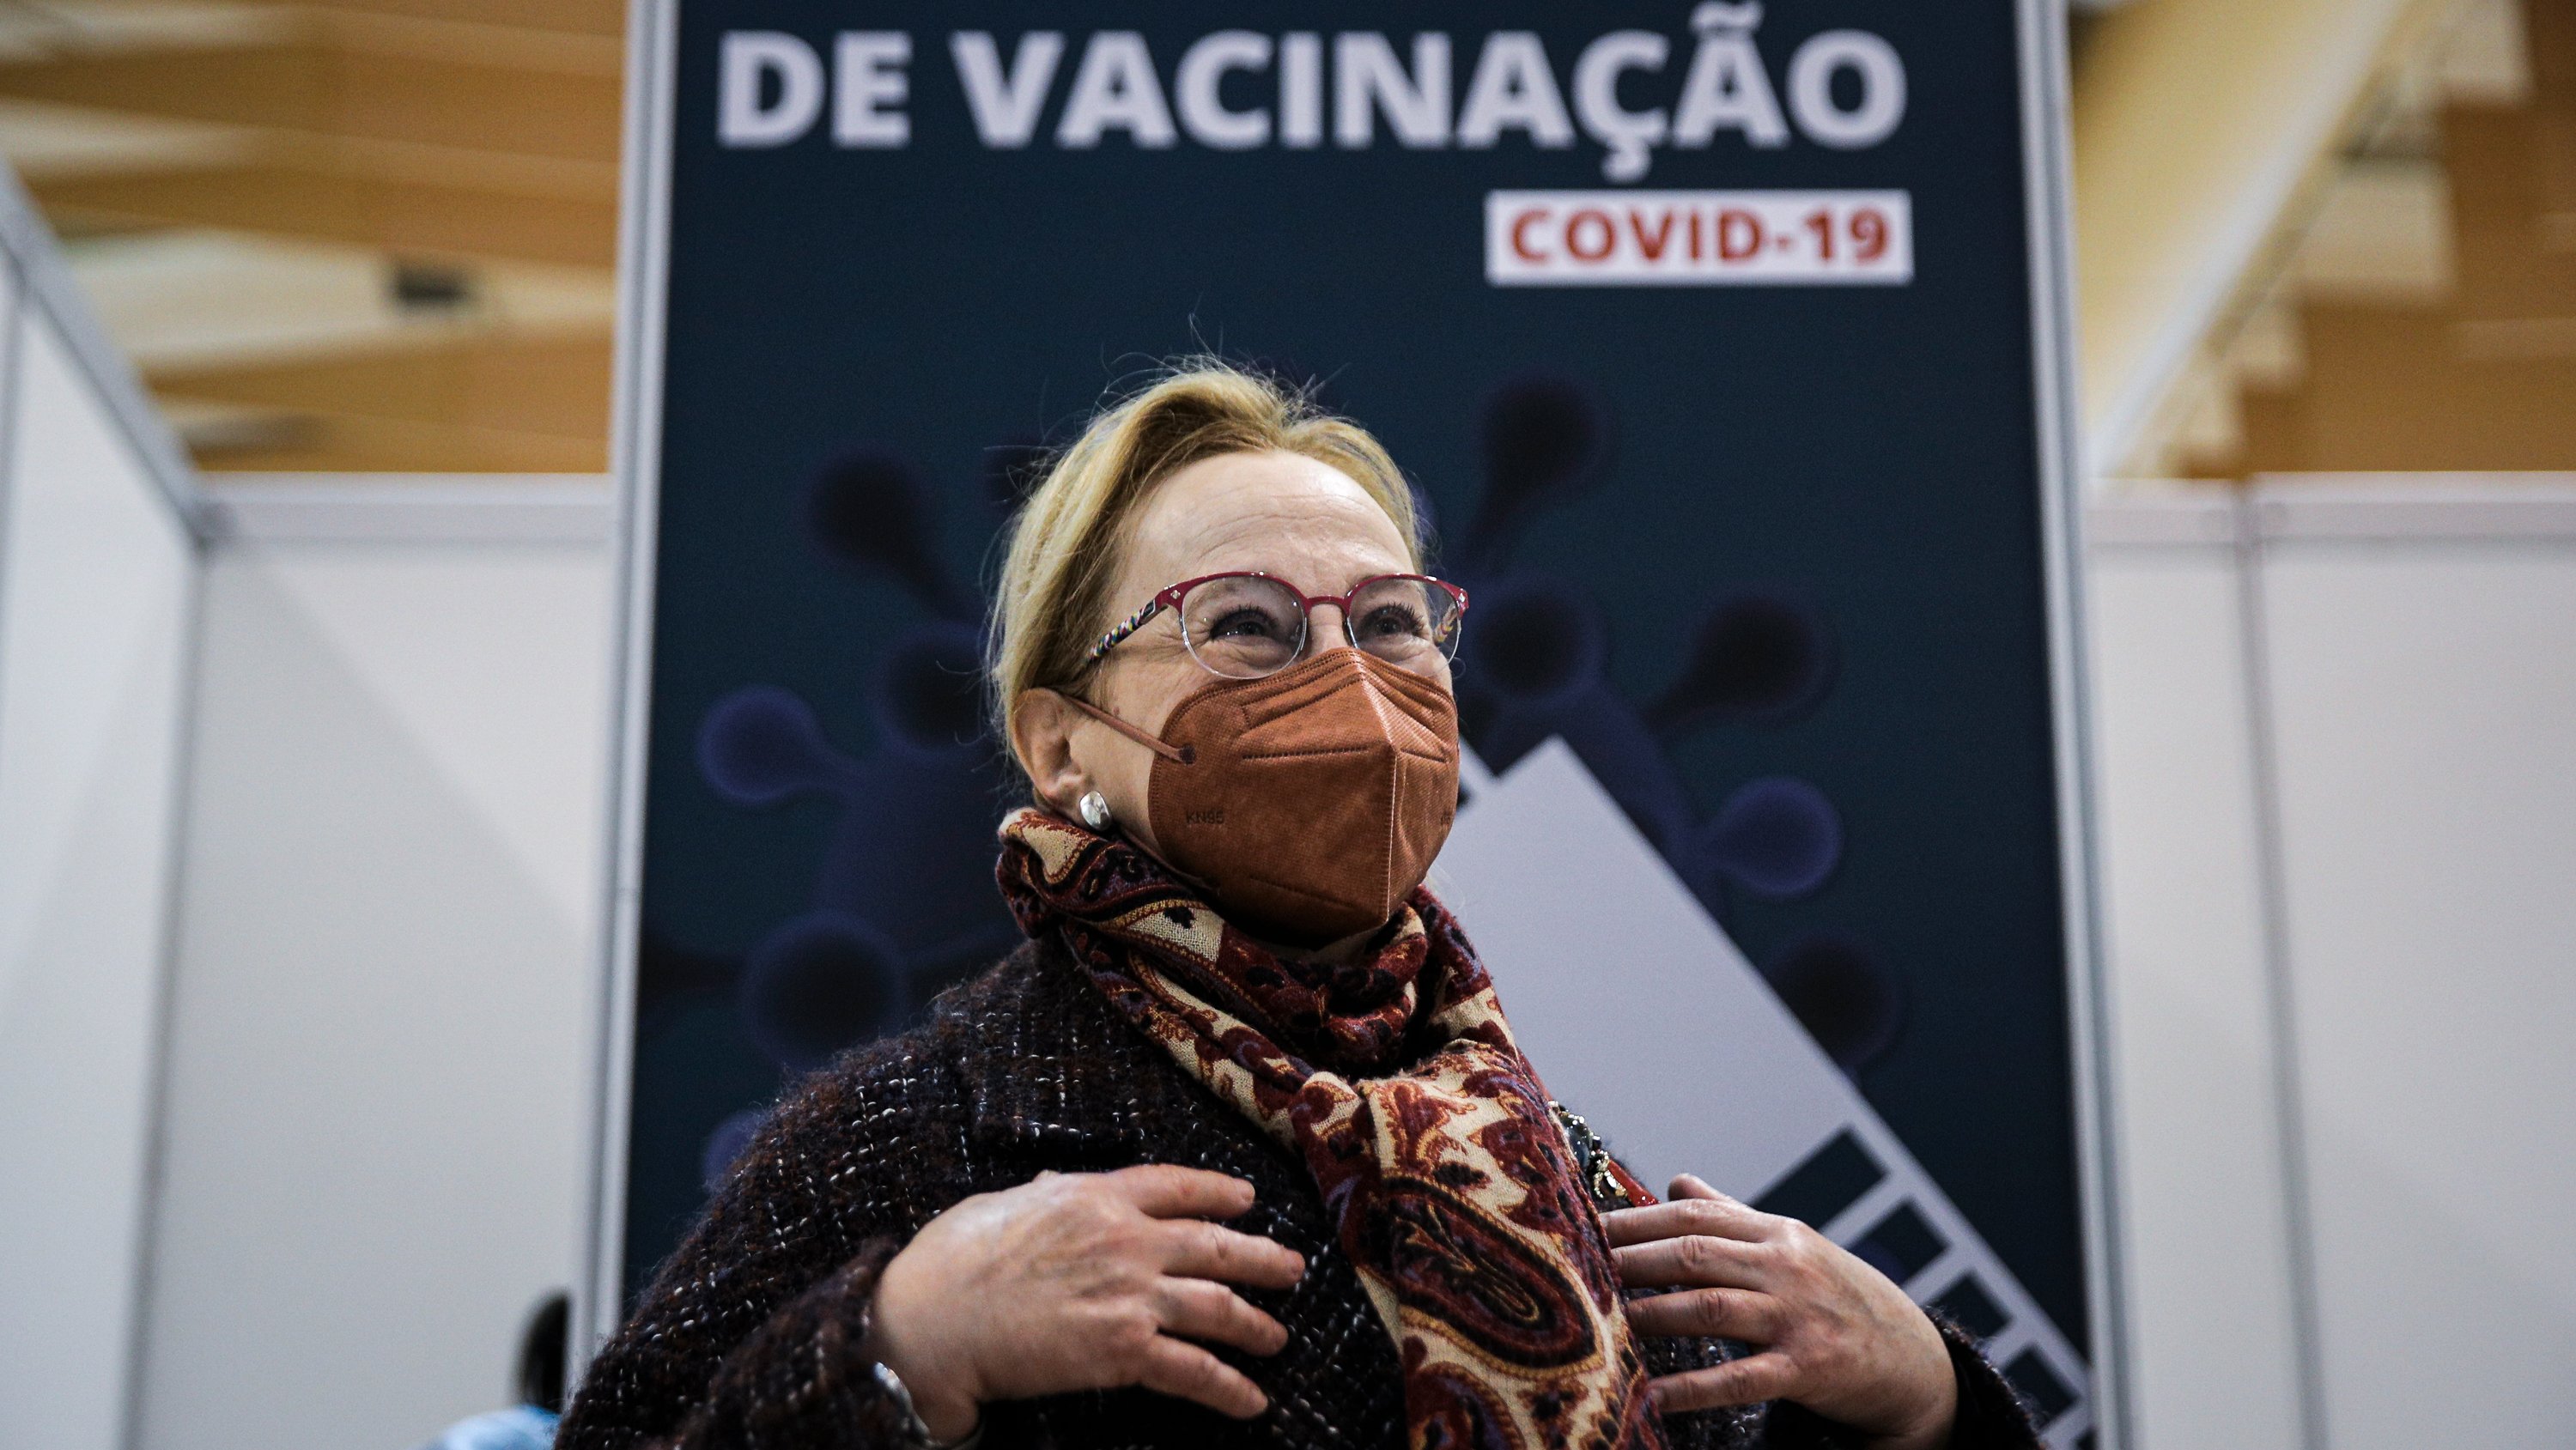 Crianças entre os 9 e 11 anos são vacinadas contra a covid-19 no Centro de Vacinação da FIL. Graça Freitas Lisboa, 18 de Dezembro de 2021 FILIPE AMORIM/OBSERVADOR